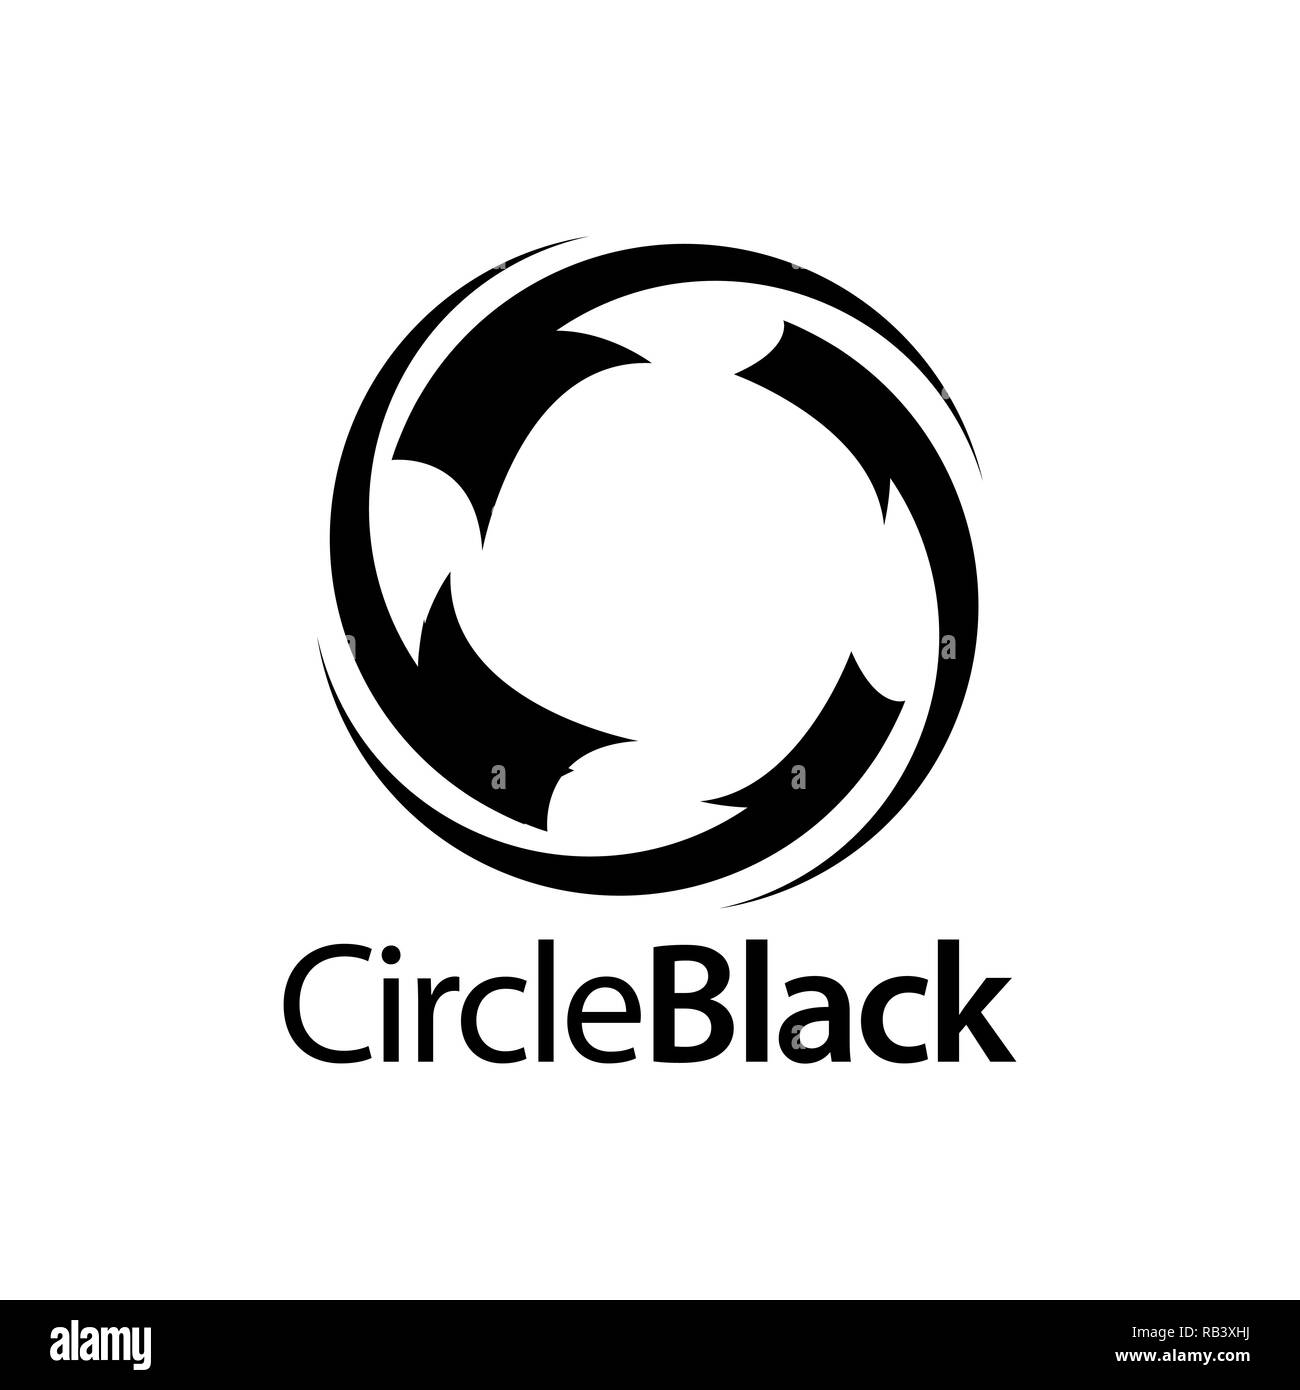 Circular charcoal circle black logo concept design template idea Stock Vector